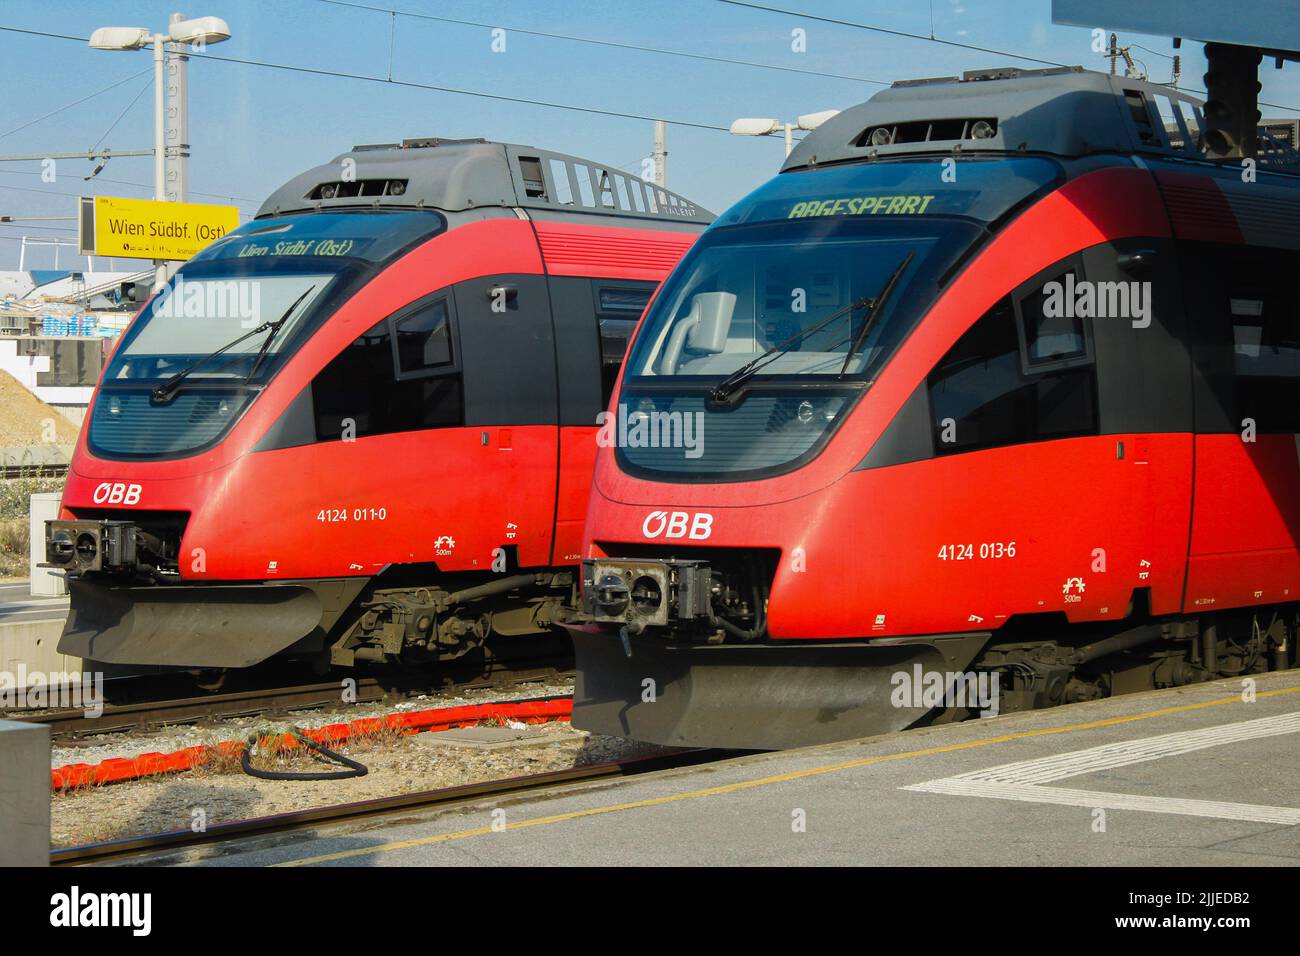 Vienna, Austria - 19 aprile 2012: Due treni elettrici rossi alla stazione sud di Vienna. Stazione ferroviaria Foto Stock